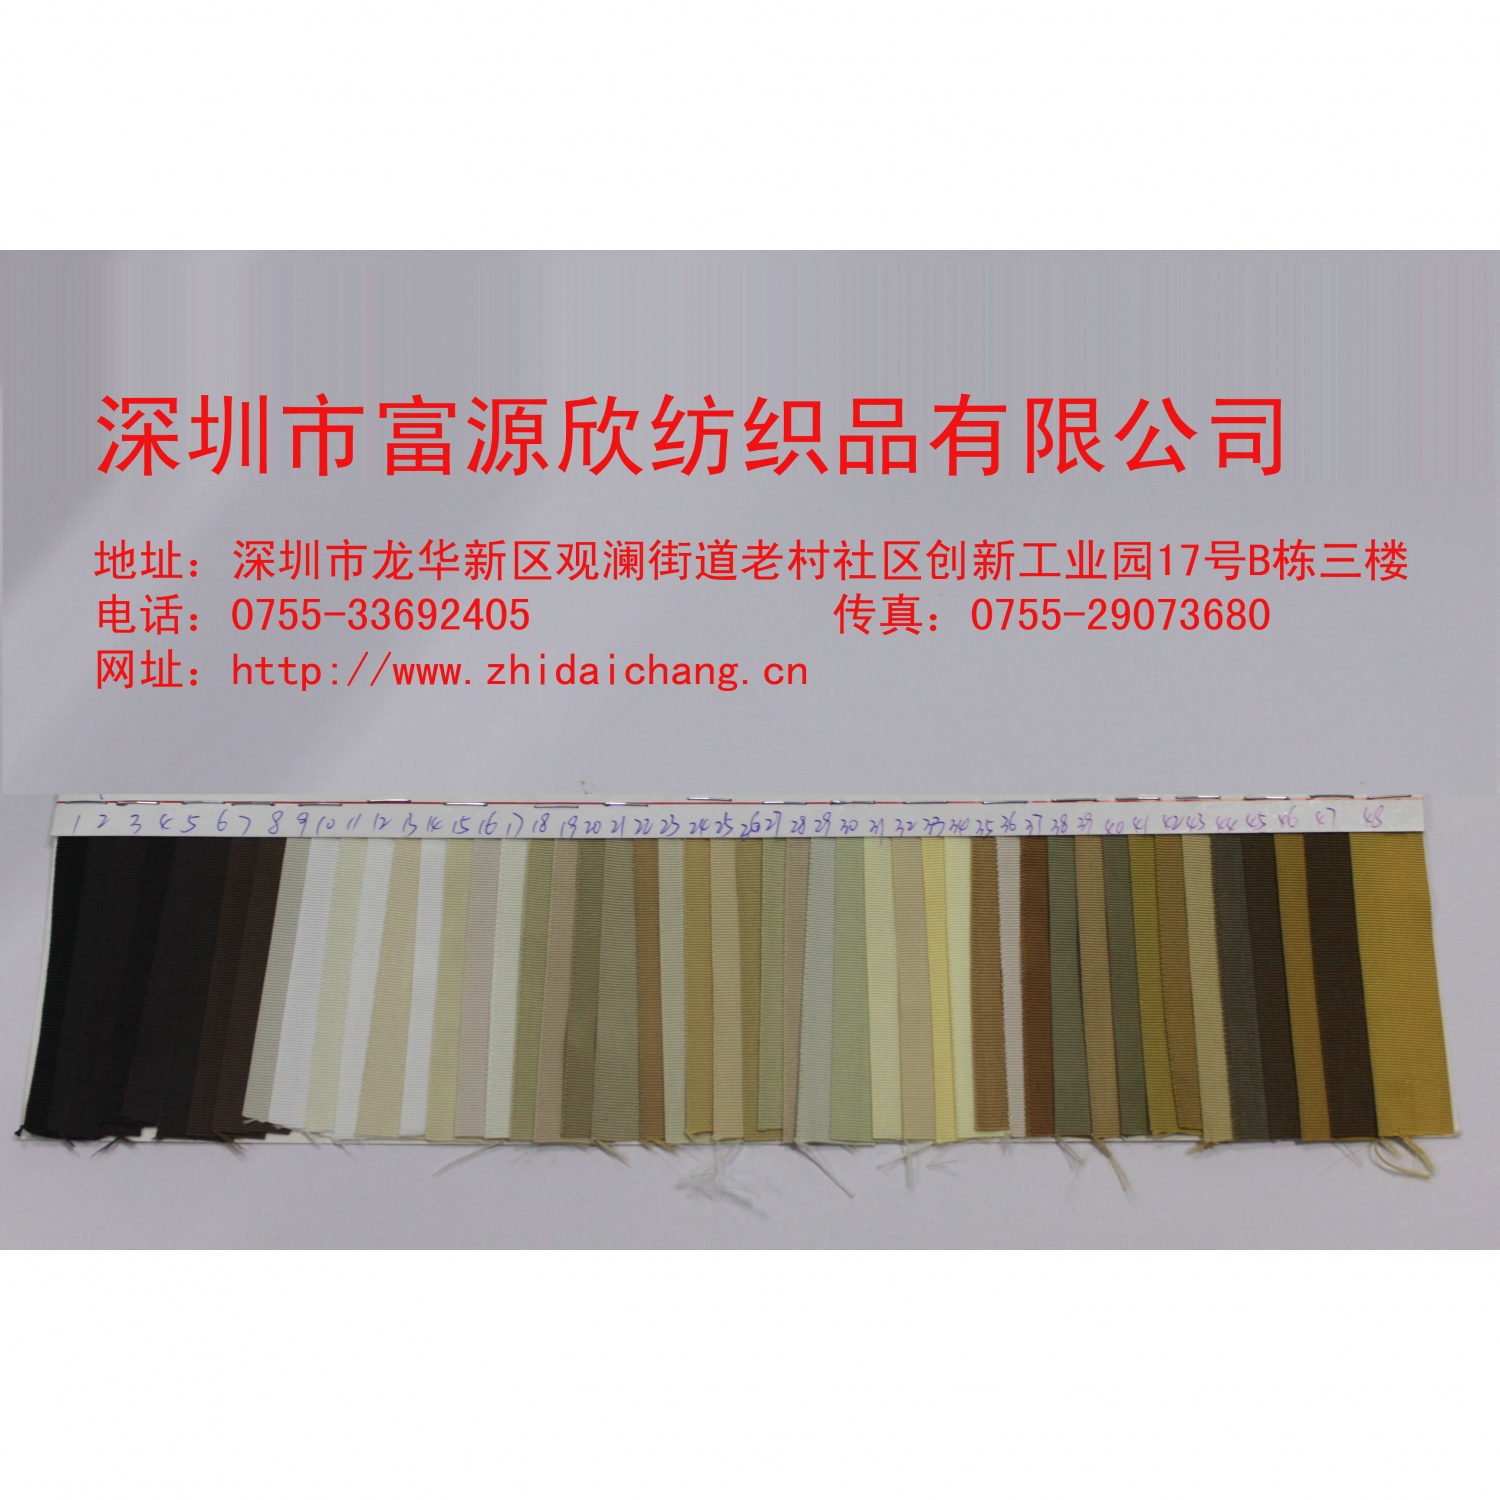 厂家直销涤纶织带、涤纶包边带、涤纶间色带、涤纶织带批发